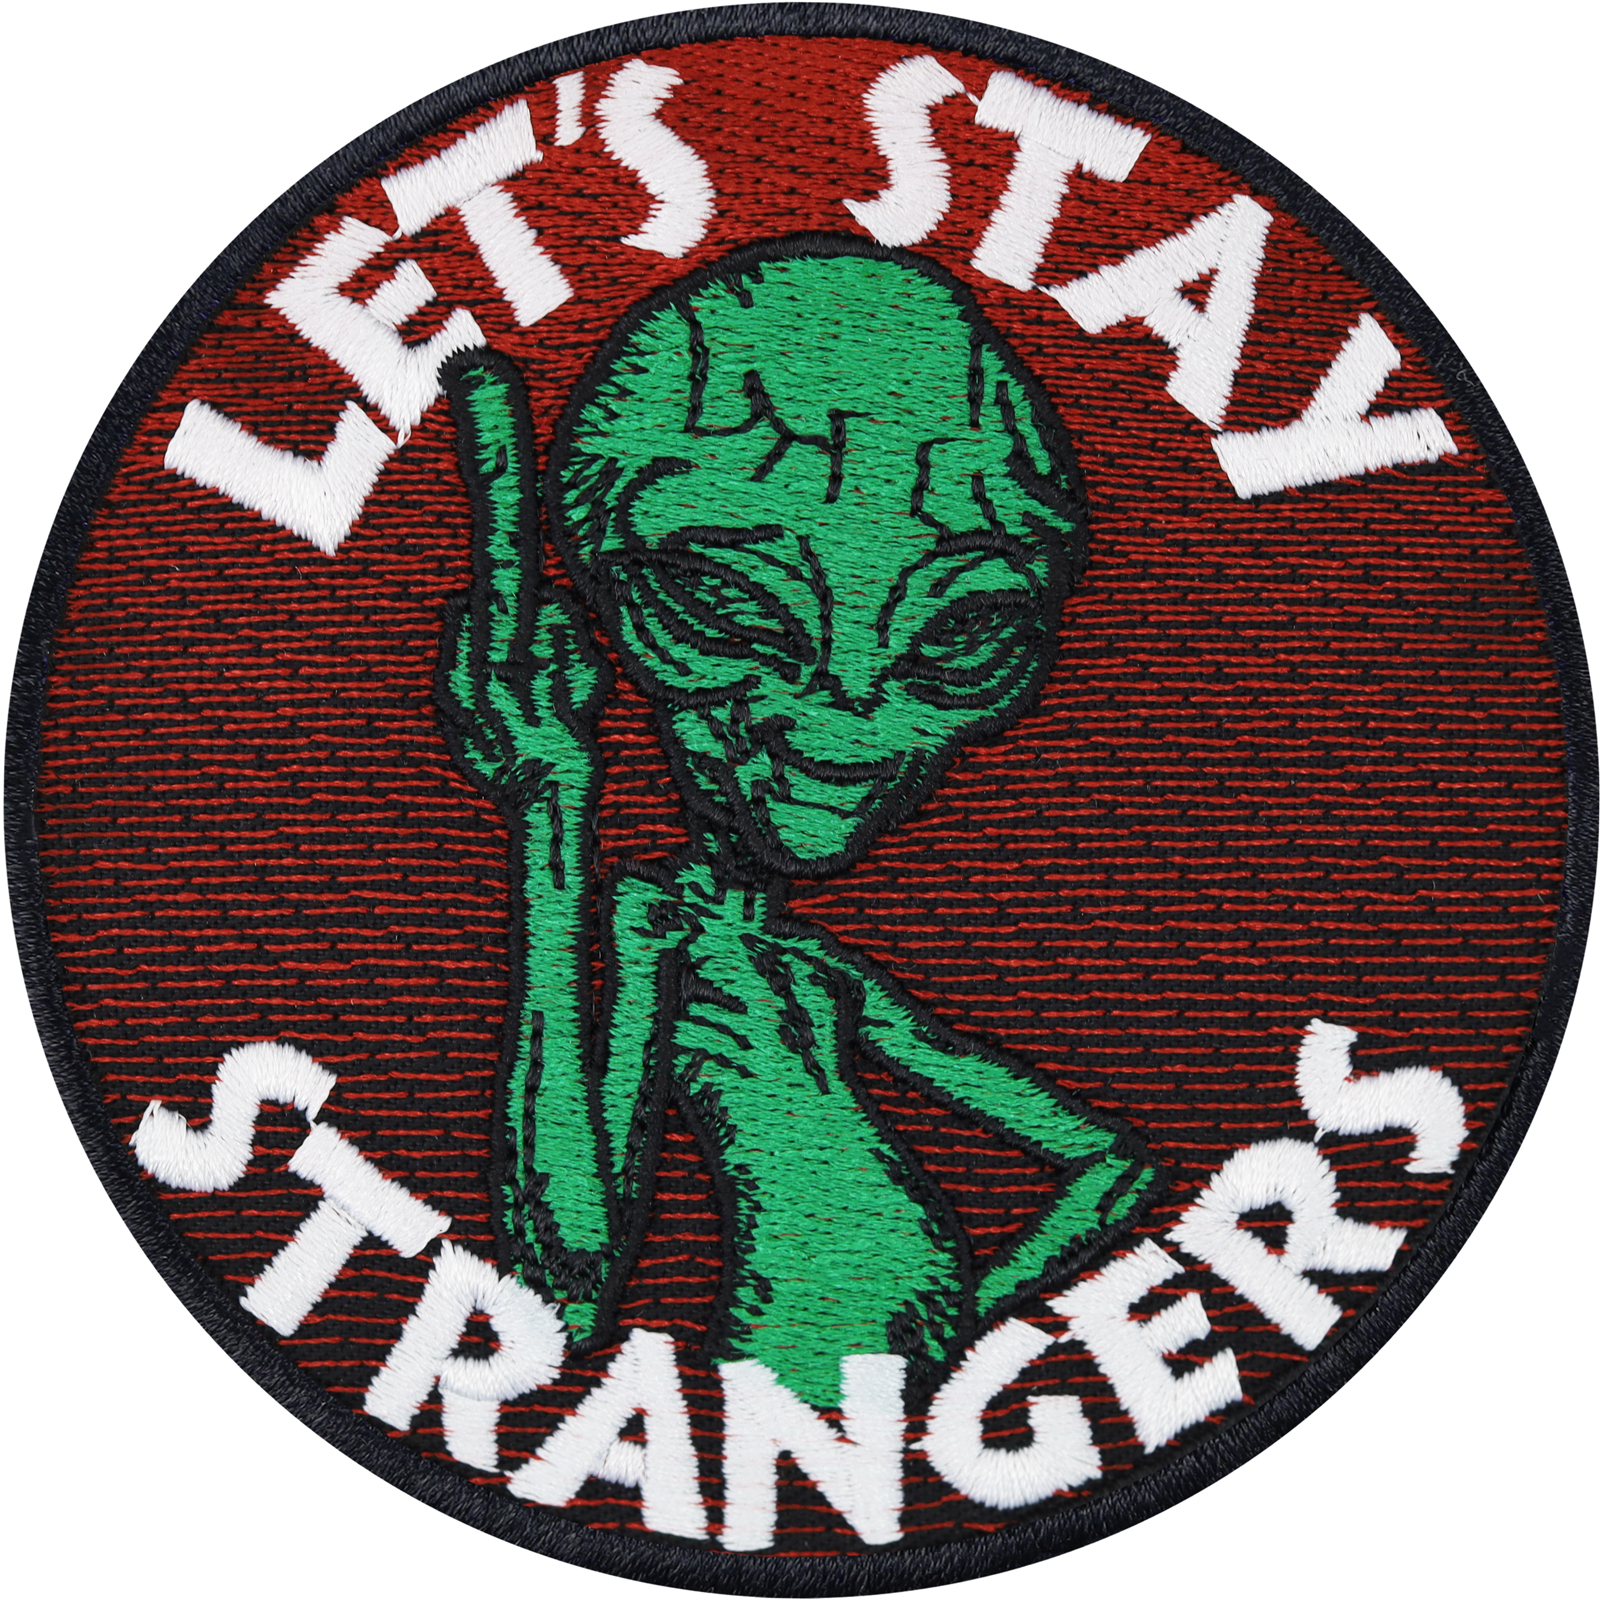 Lets stay strangers - Alien - Patch